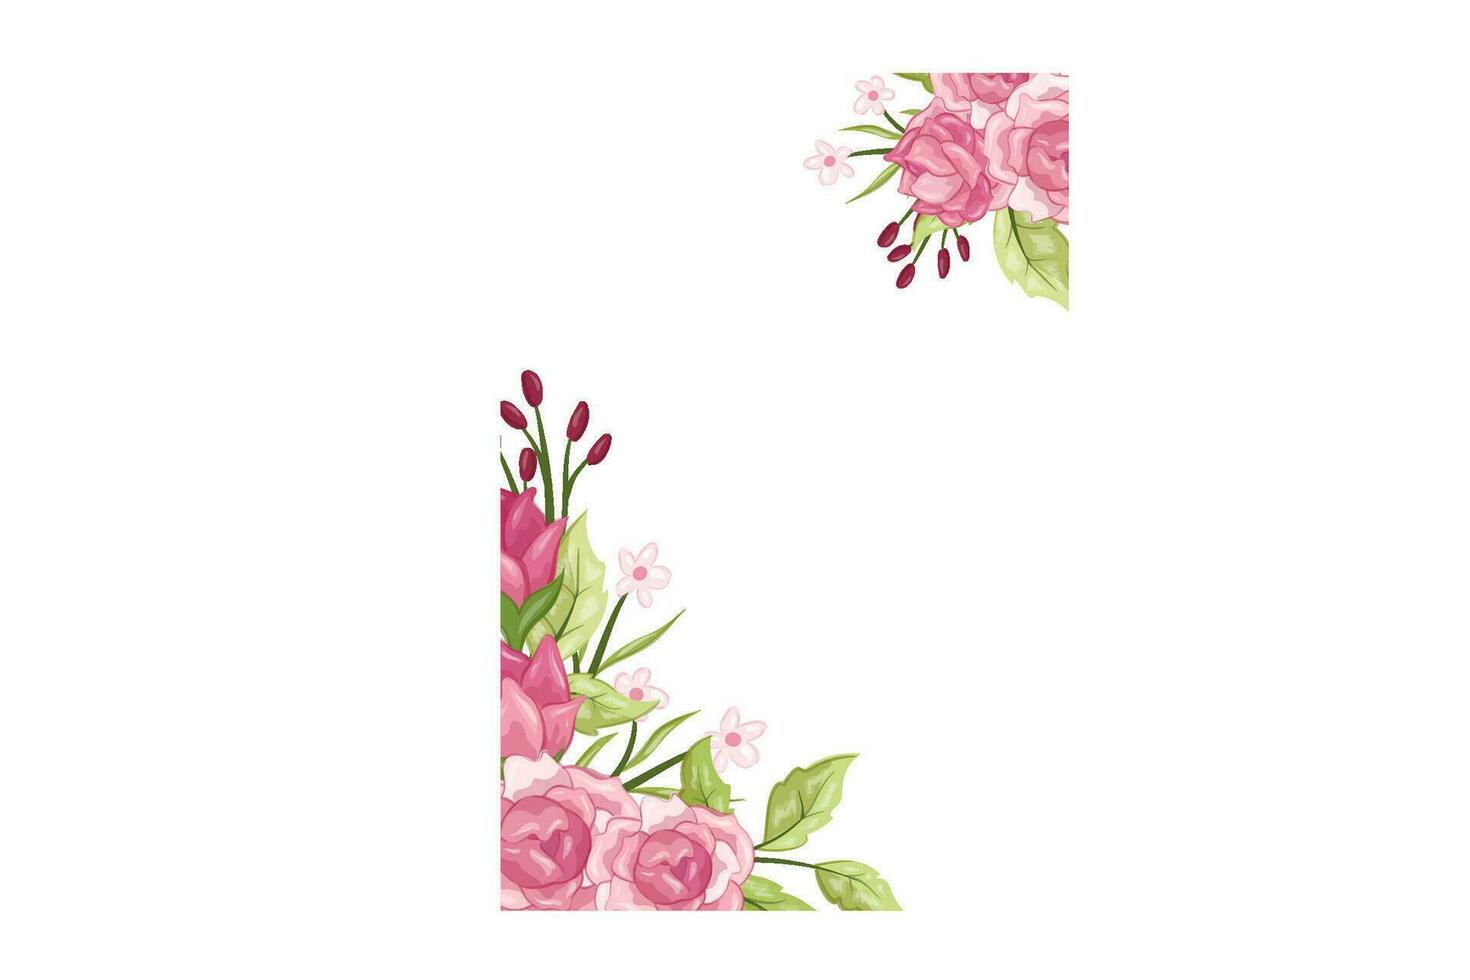 flower frame design art illustration vector